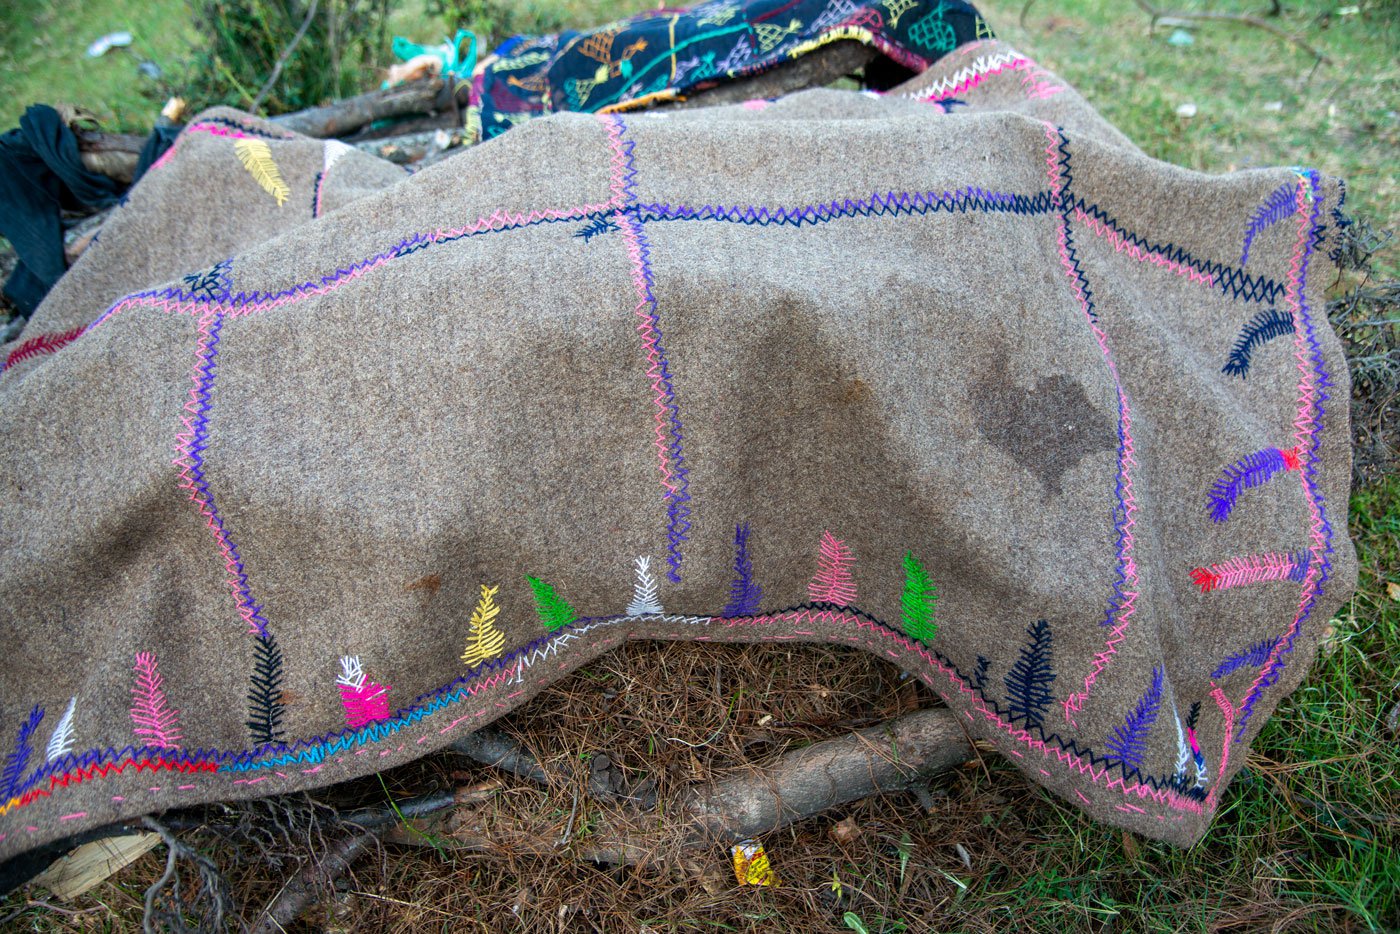 A mat hand-embroidered by Bakarwal women